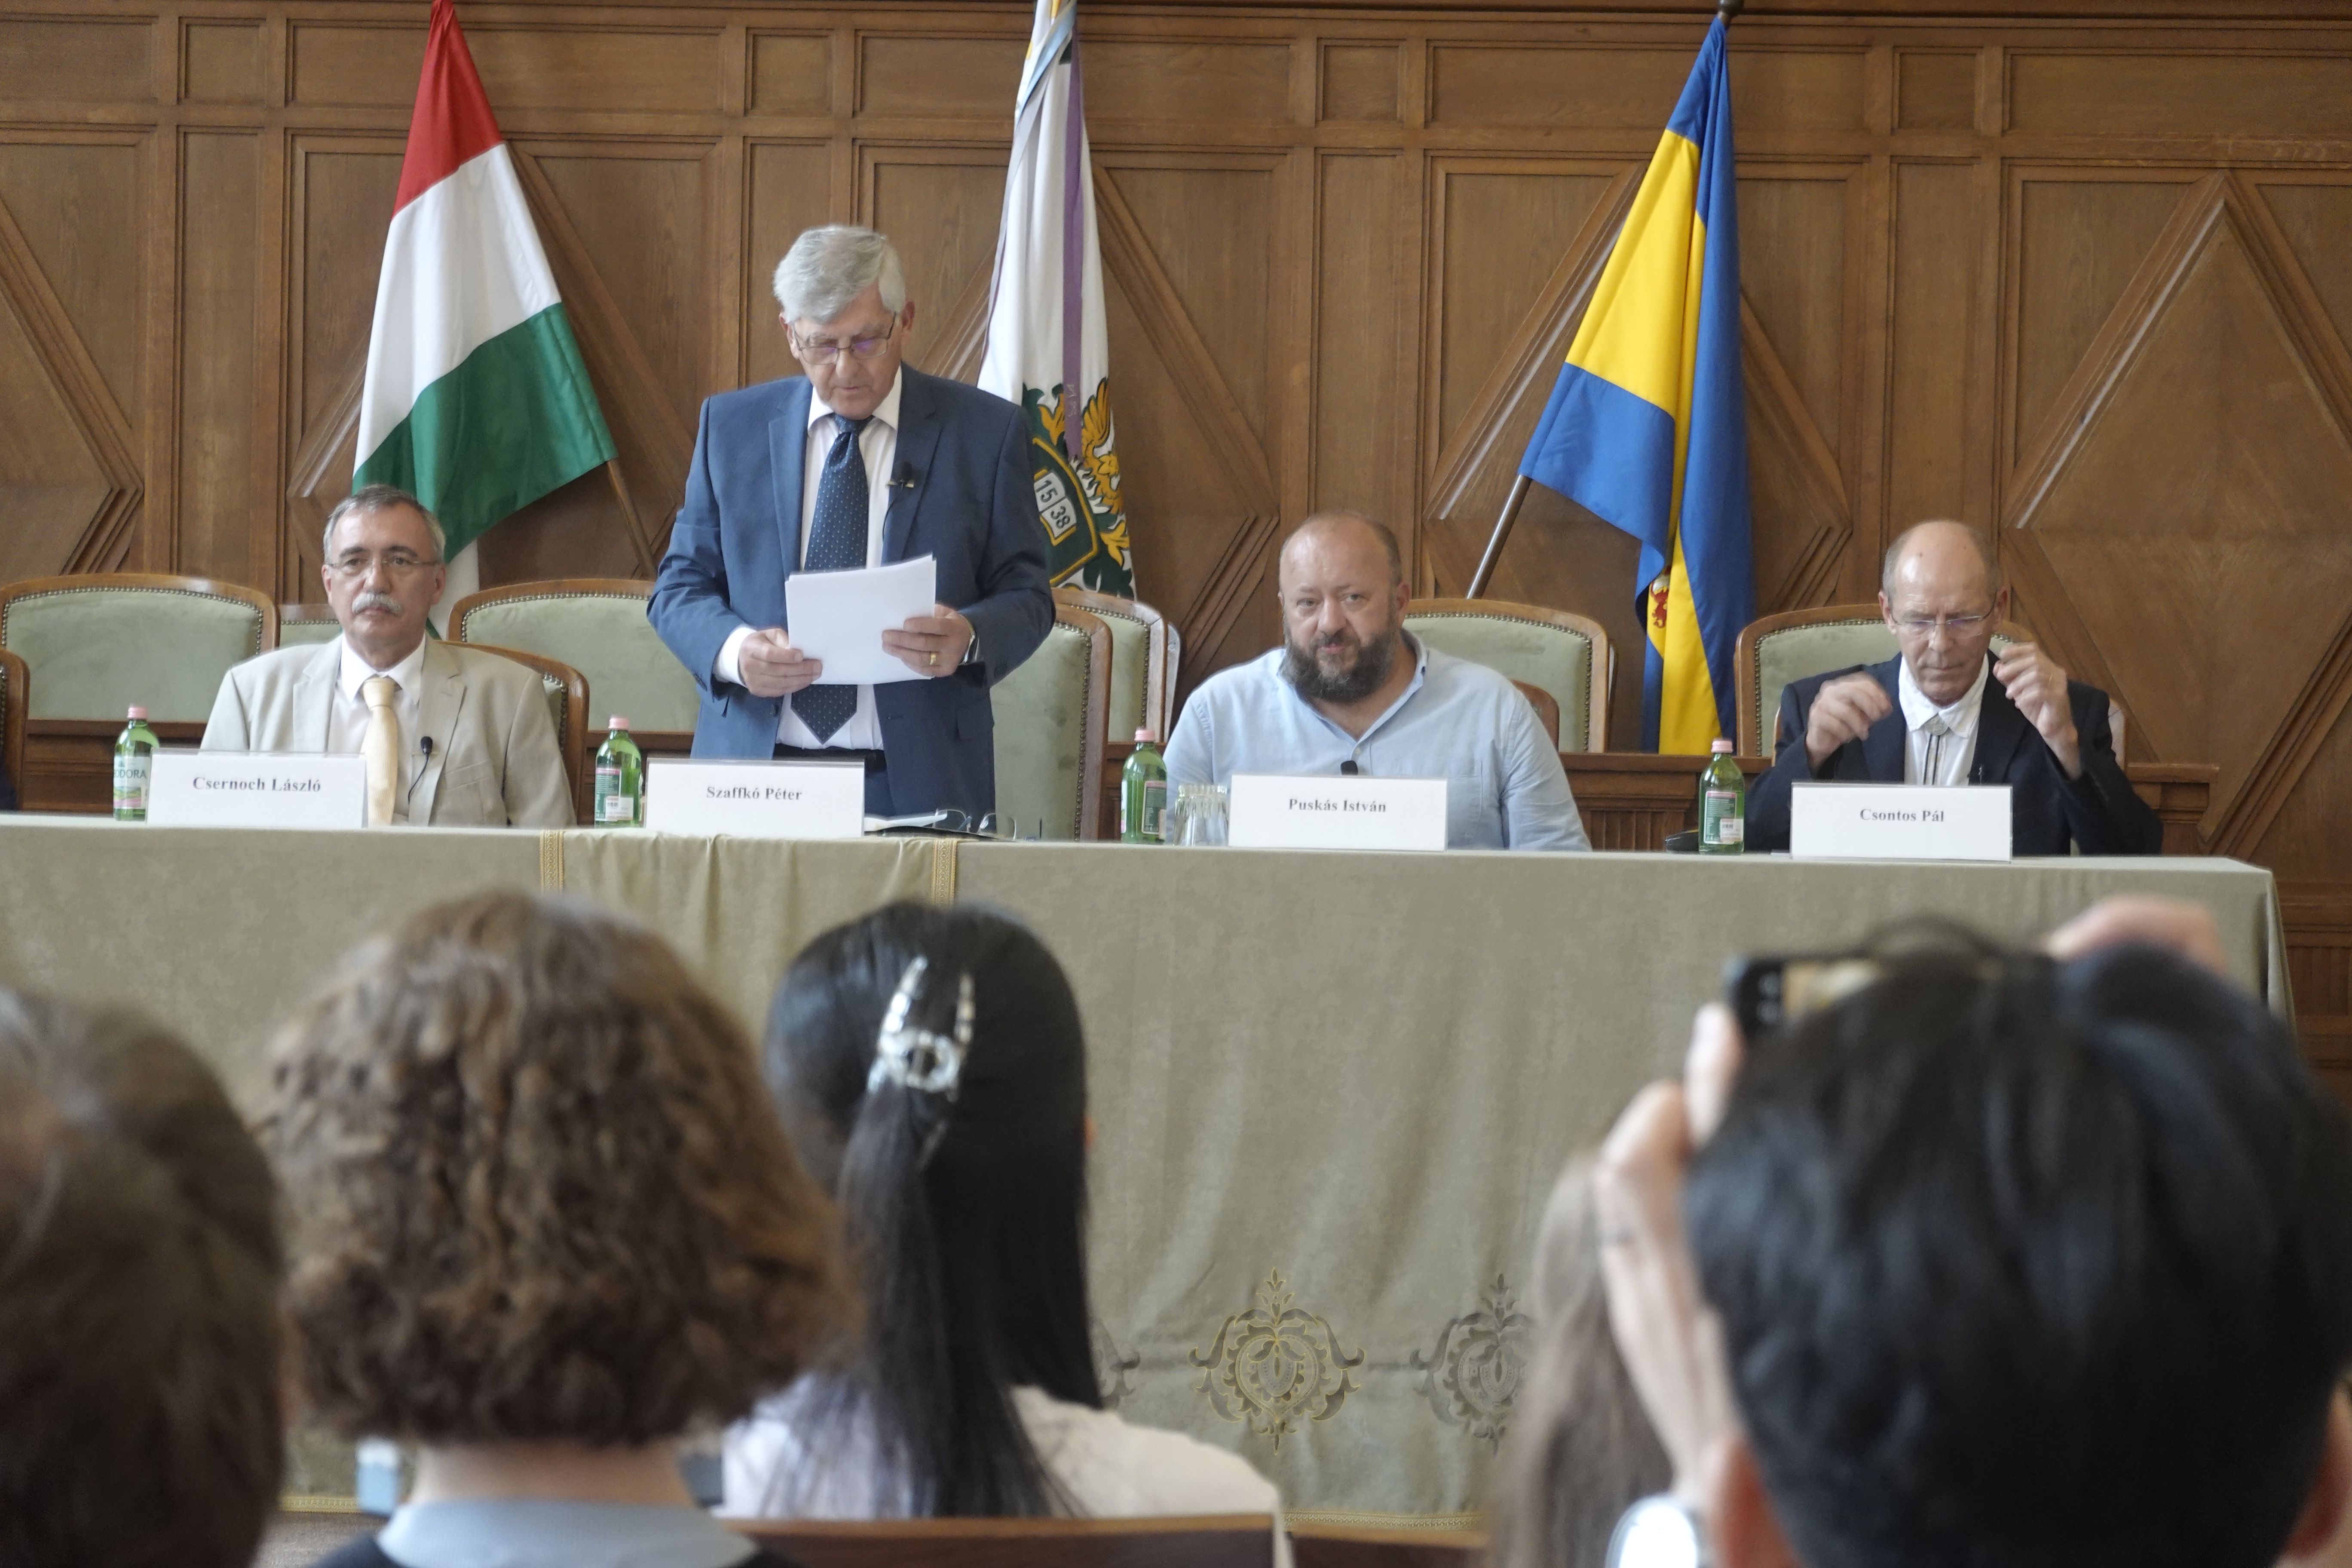 A nyári egyetem is Debrecen hírét viszi szerte a nagyvilágban